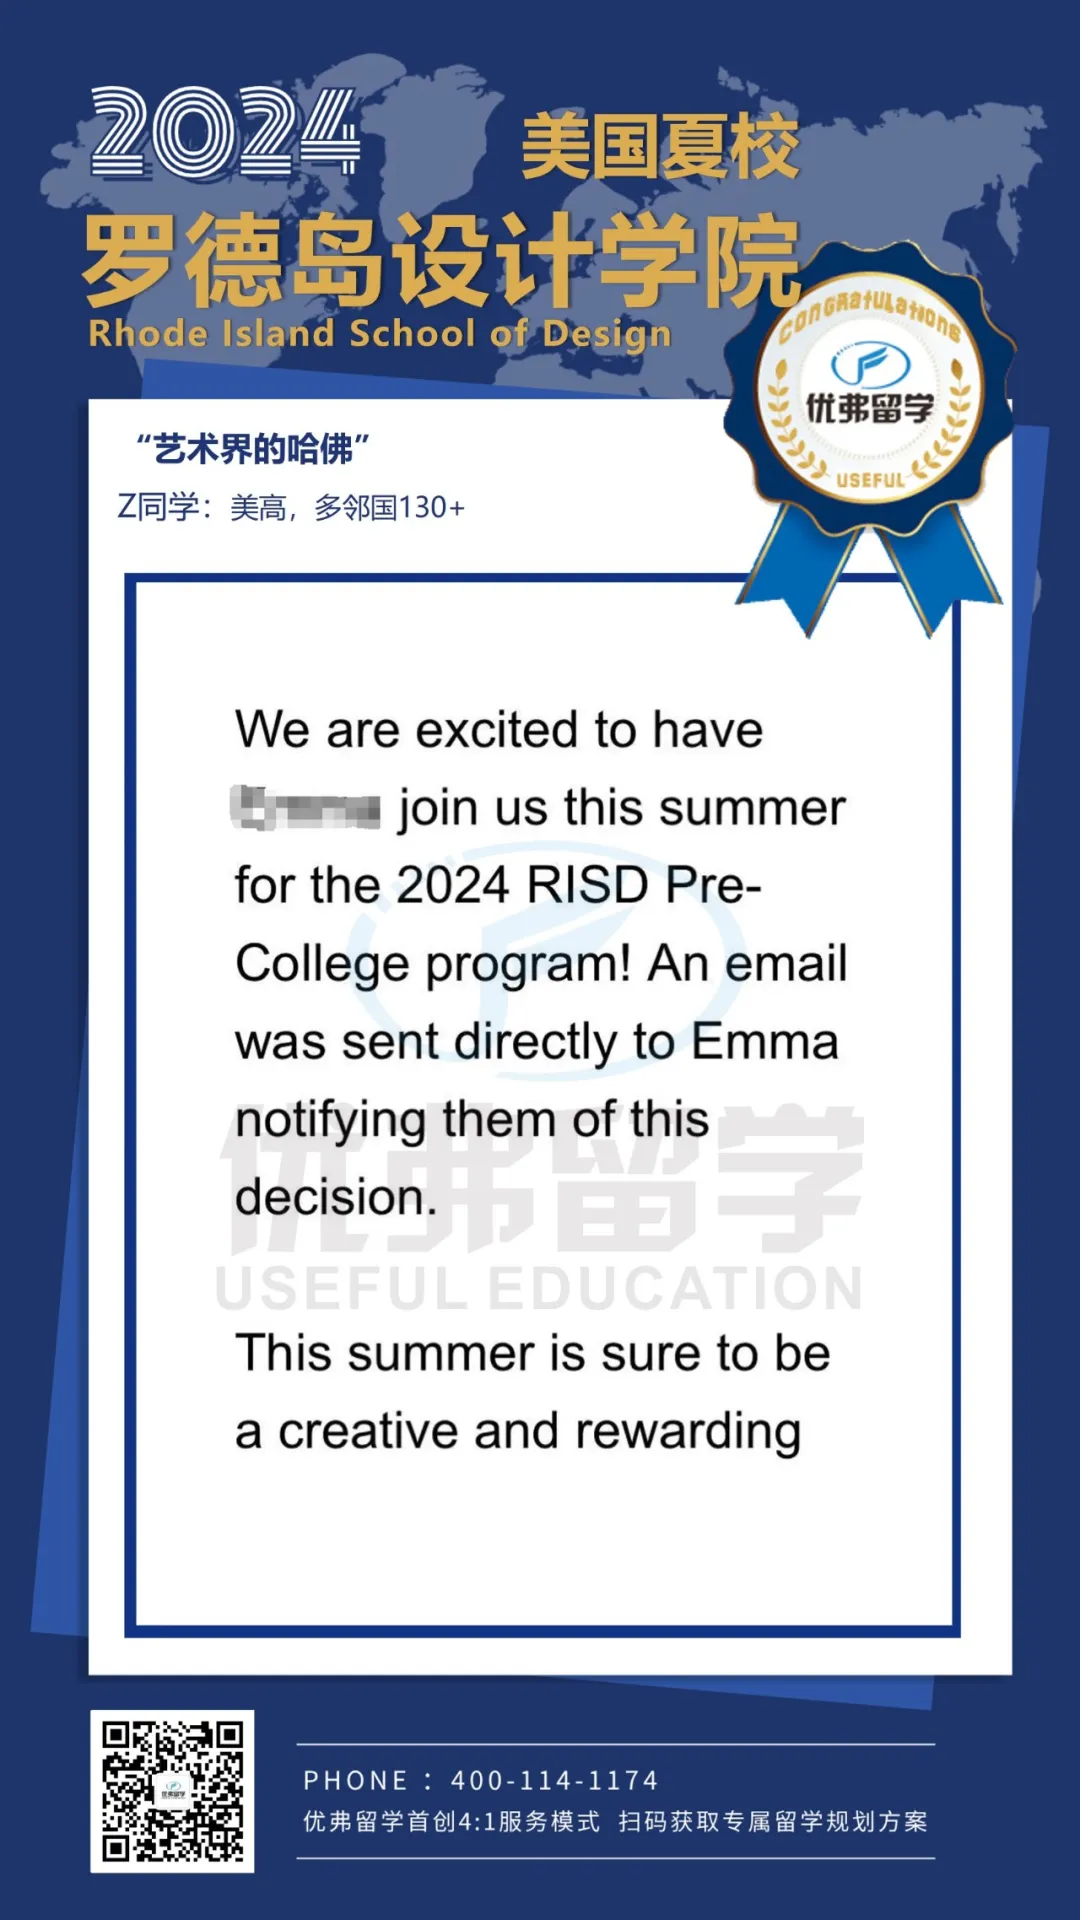 恭喜优弗Z同学拿到“艺术界的哈佛”——罗德岛设计学院夏校offer！